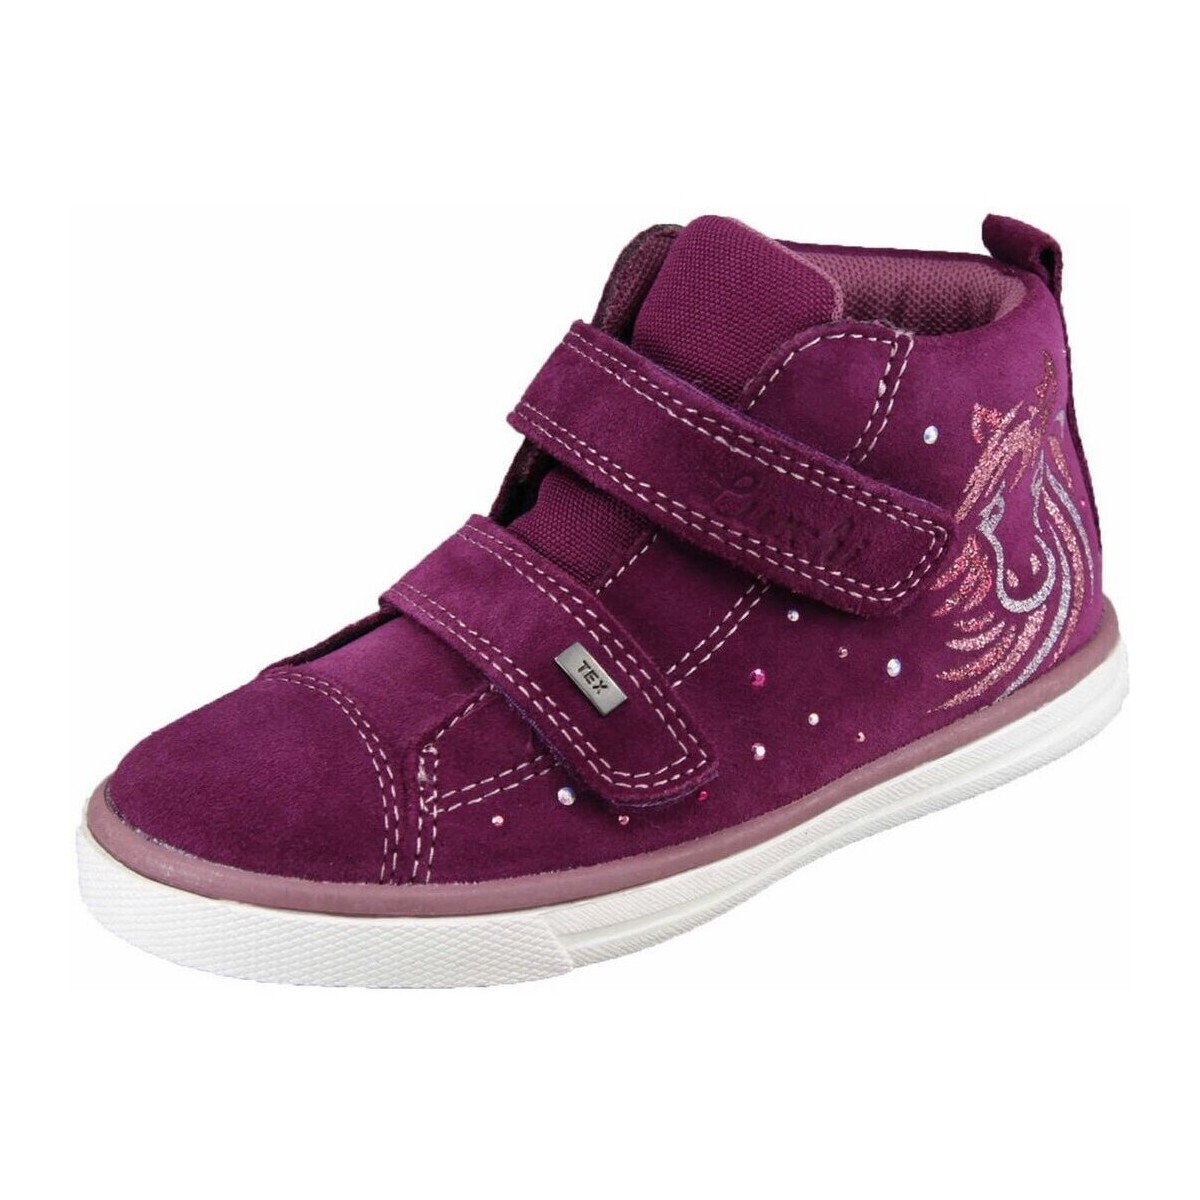 Schuhe Mädchen Stiefel Lurchi Klettstiefel deep purple (brombeere) 33-13317-29 Milly Violett